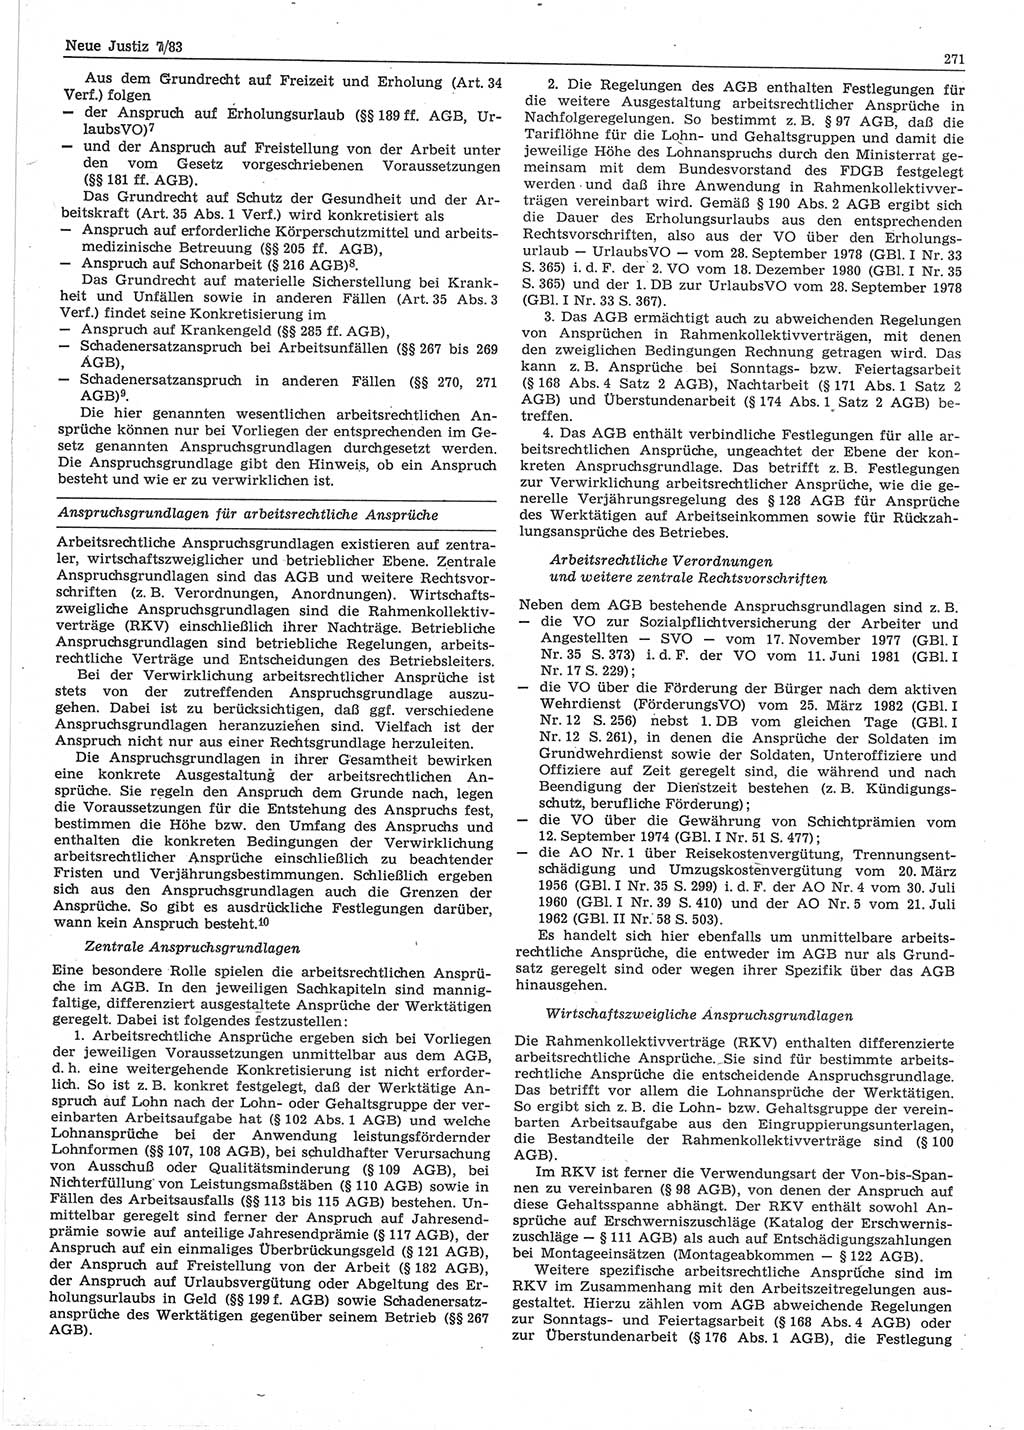 Neue Justiz (NJ), Zeitschrift für sozialistisches Recht und Gesetzlichkeit [Deutsche Demokratische Republik (DDR)], 37. Jahrgang 1983, Seite 271 (NJ DDR 1983, S. 271)